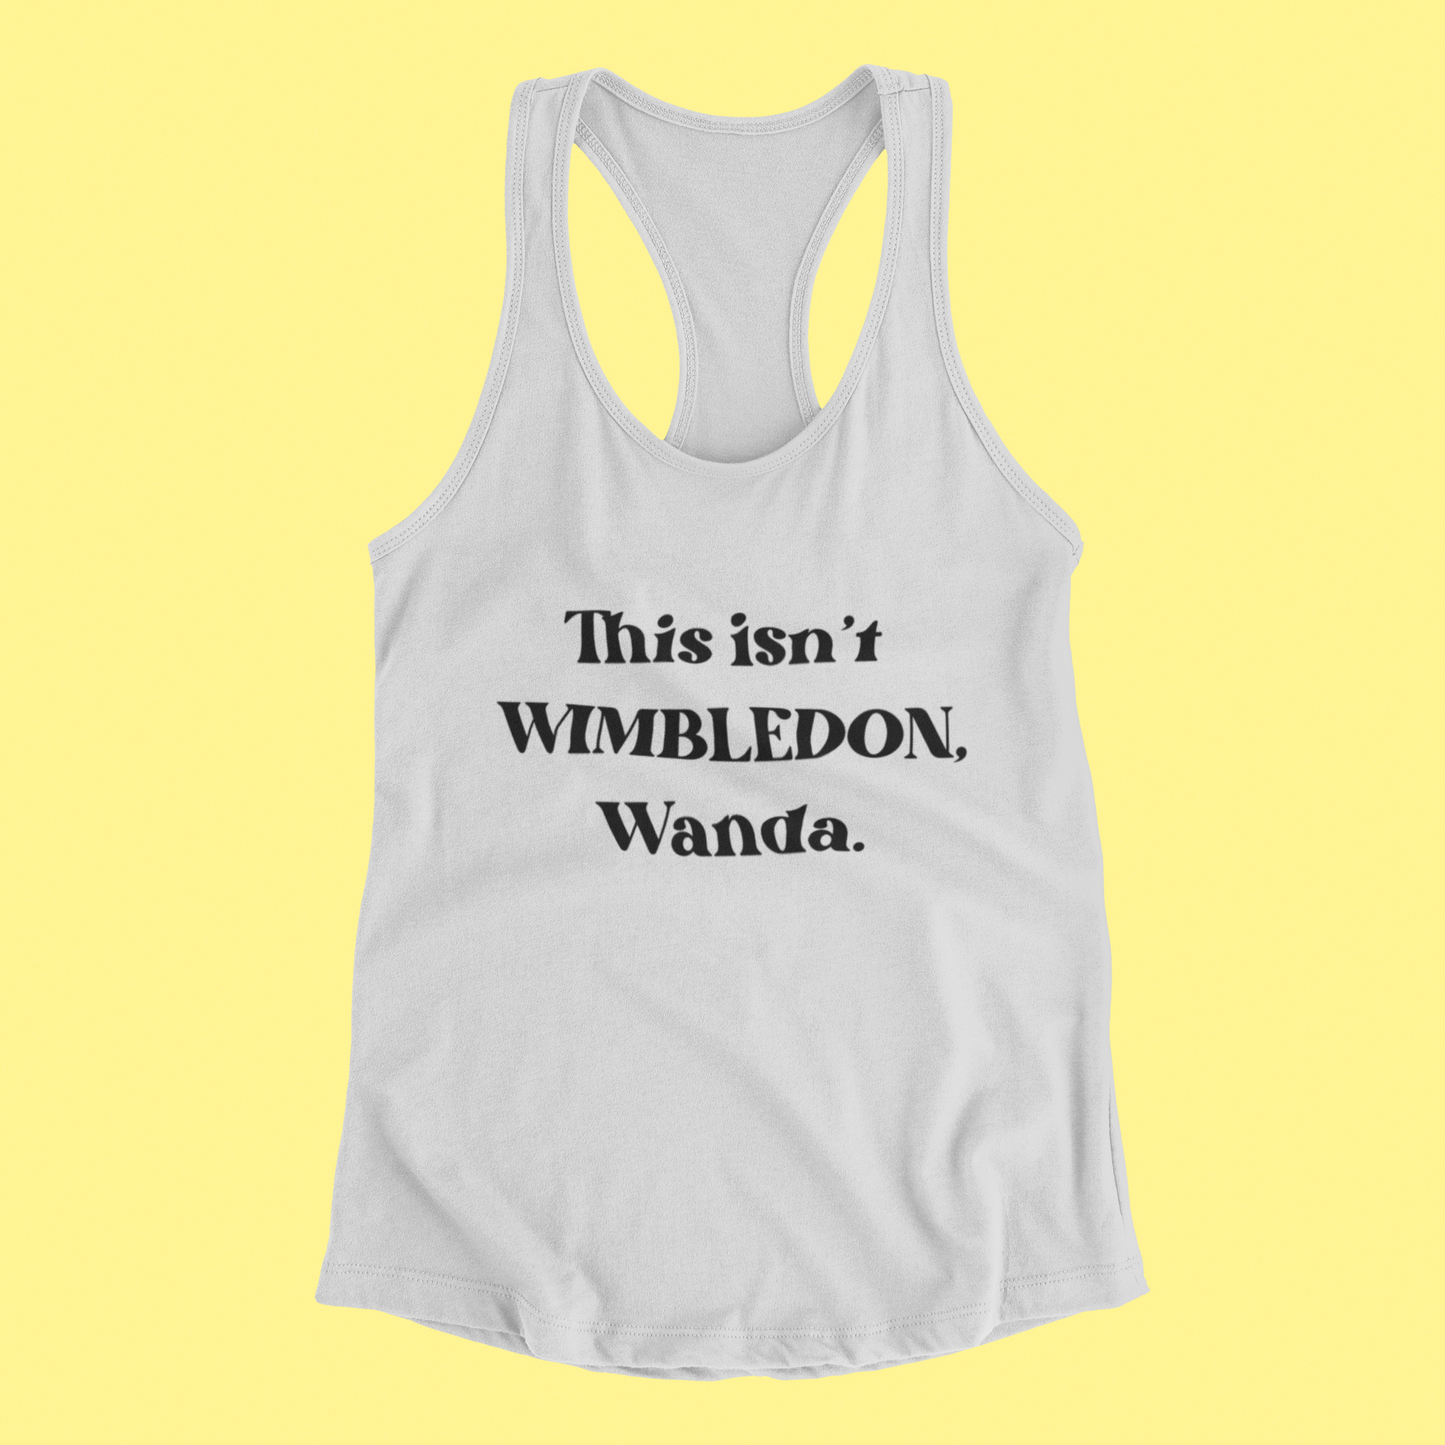 This isn't Wimbledon, Wanda.